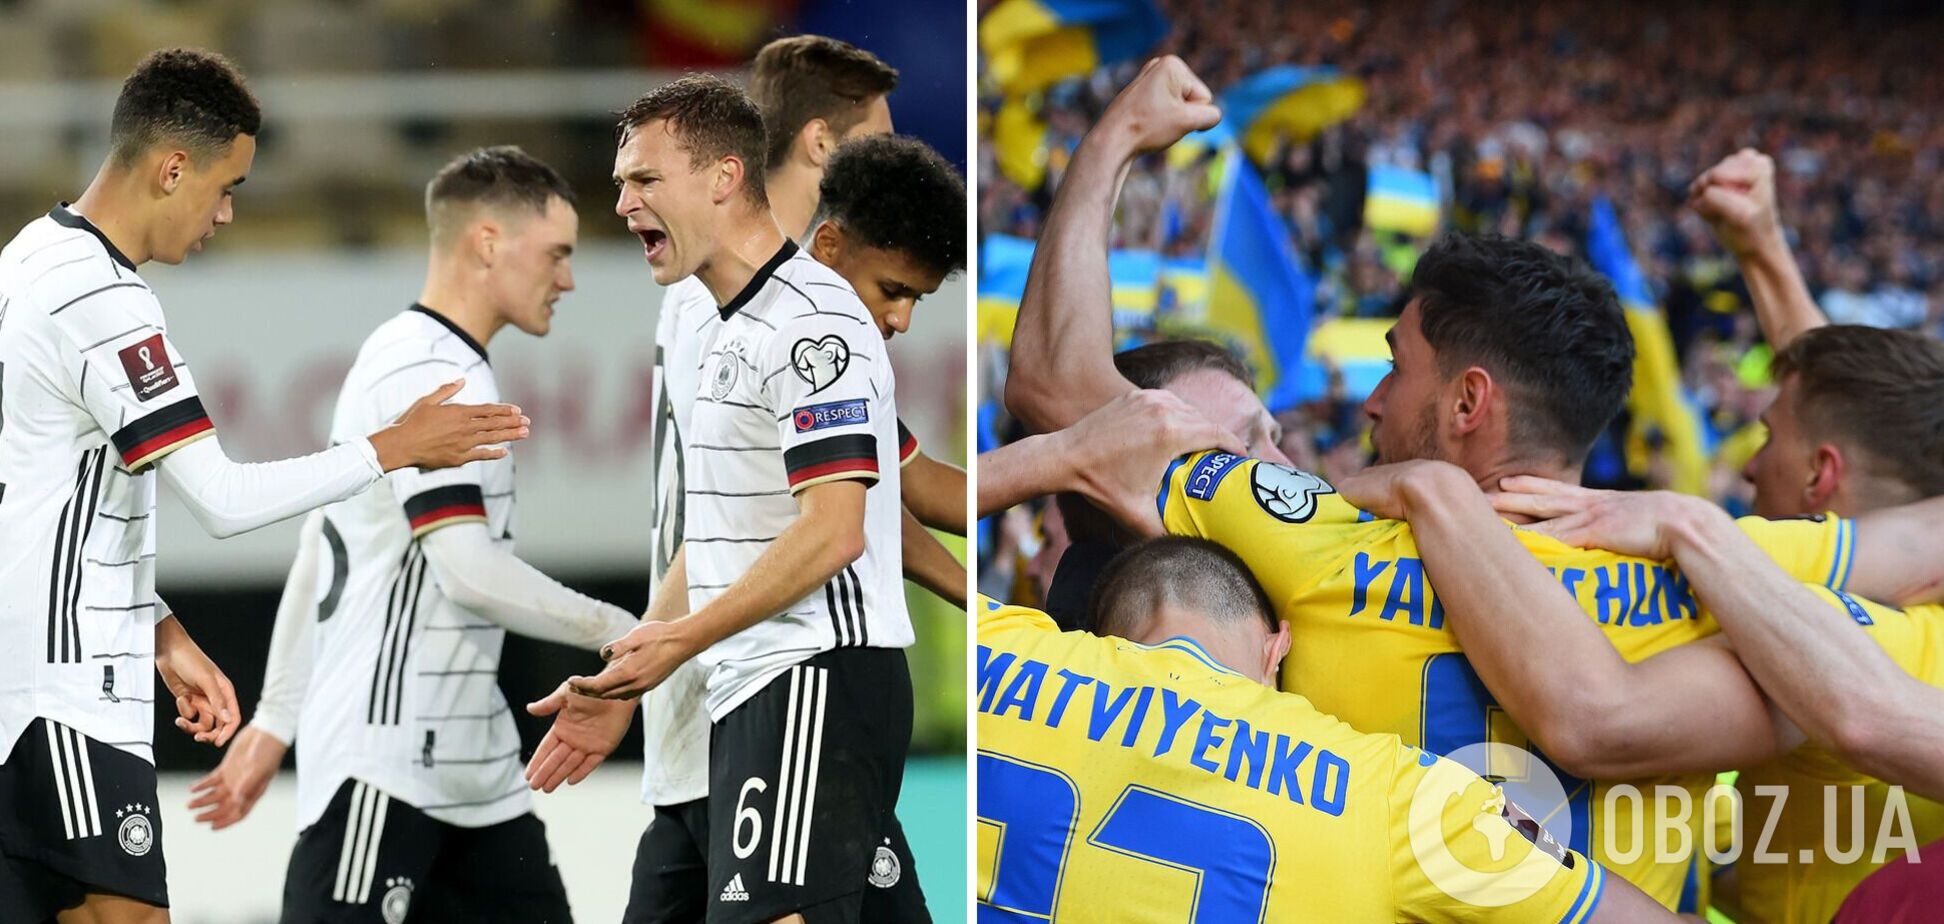 4-кратные чемпионы мира по футболу готовят громкое событие с участием сборной Украины